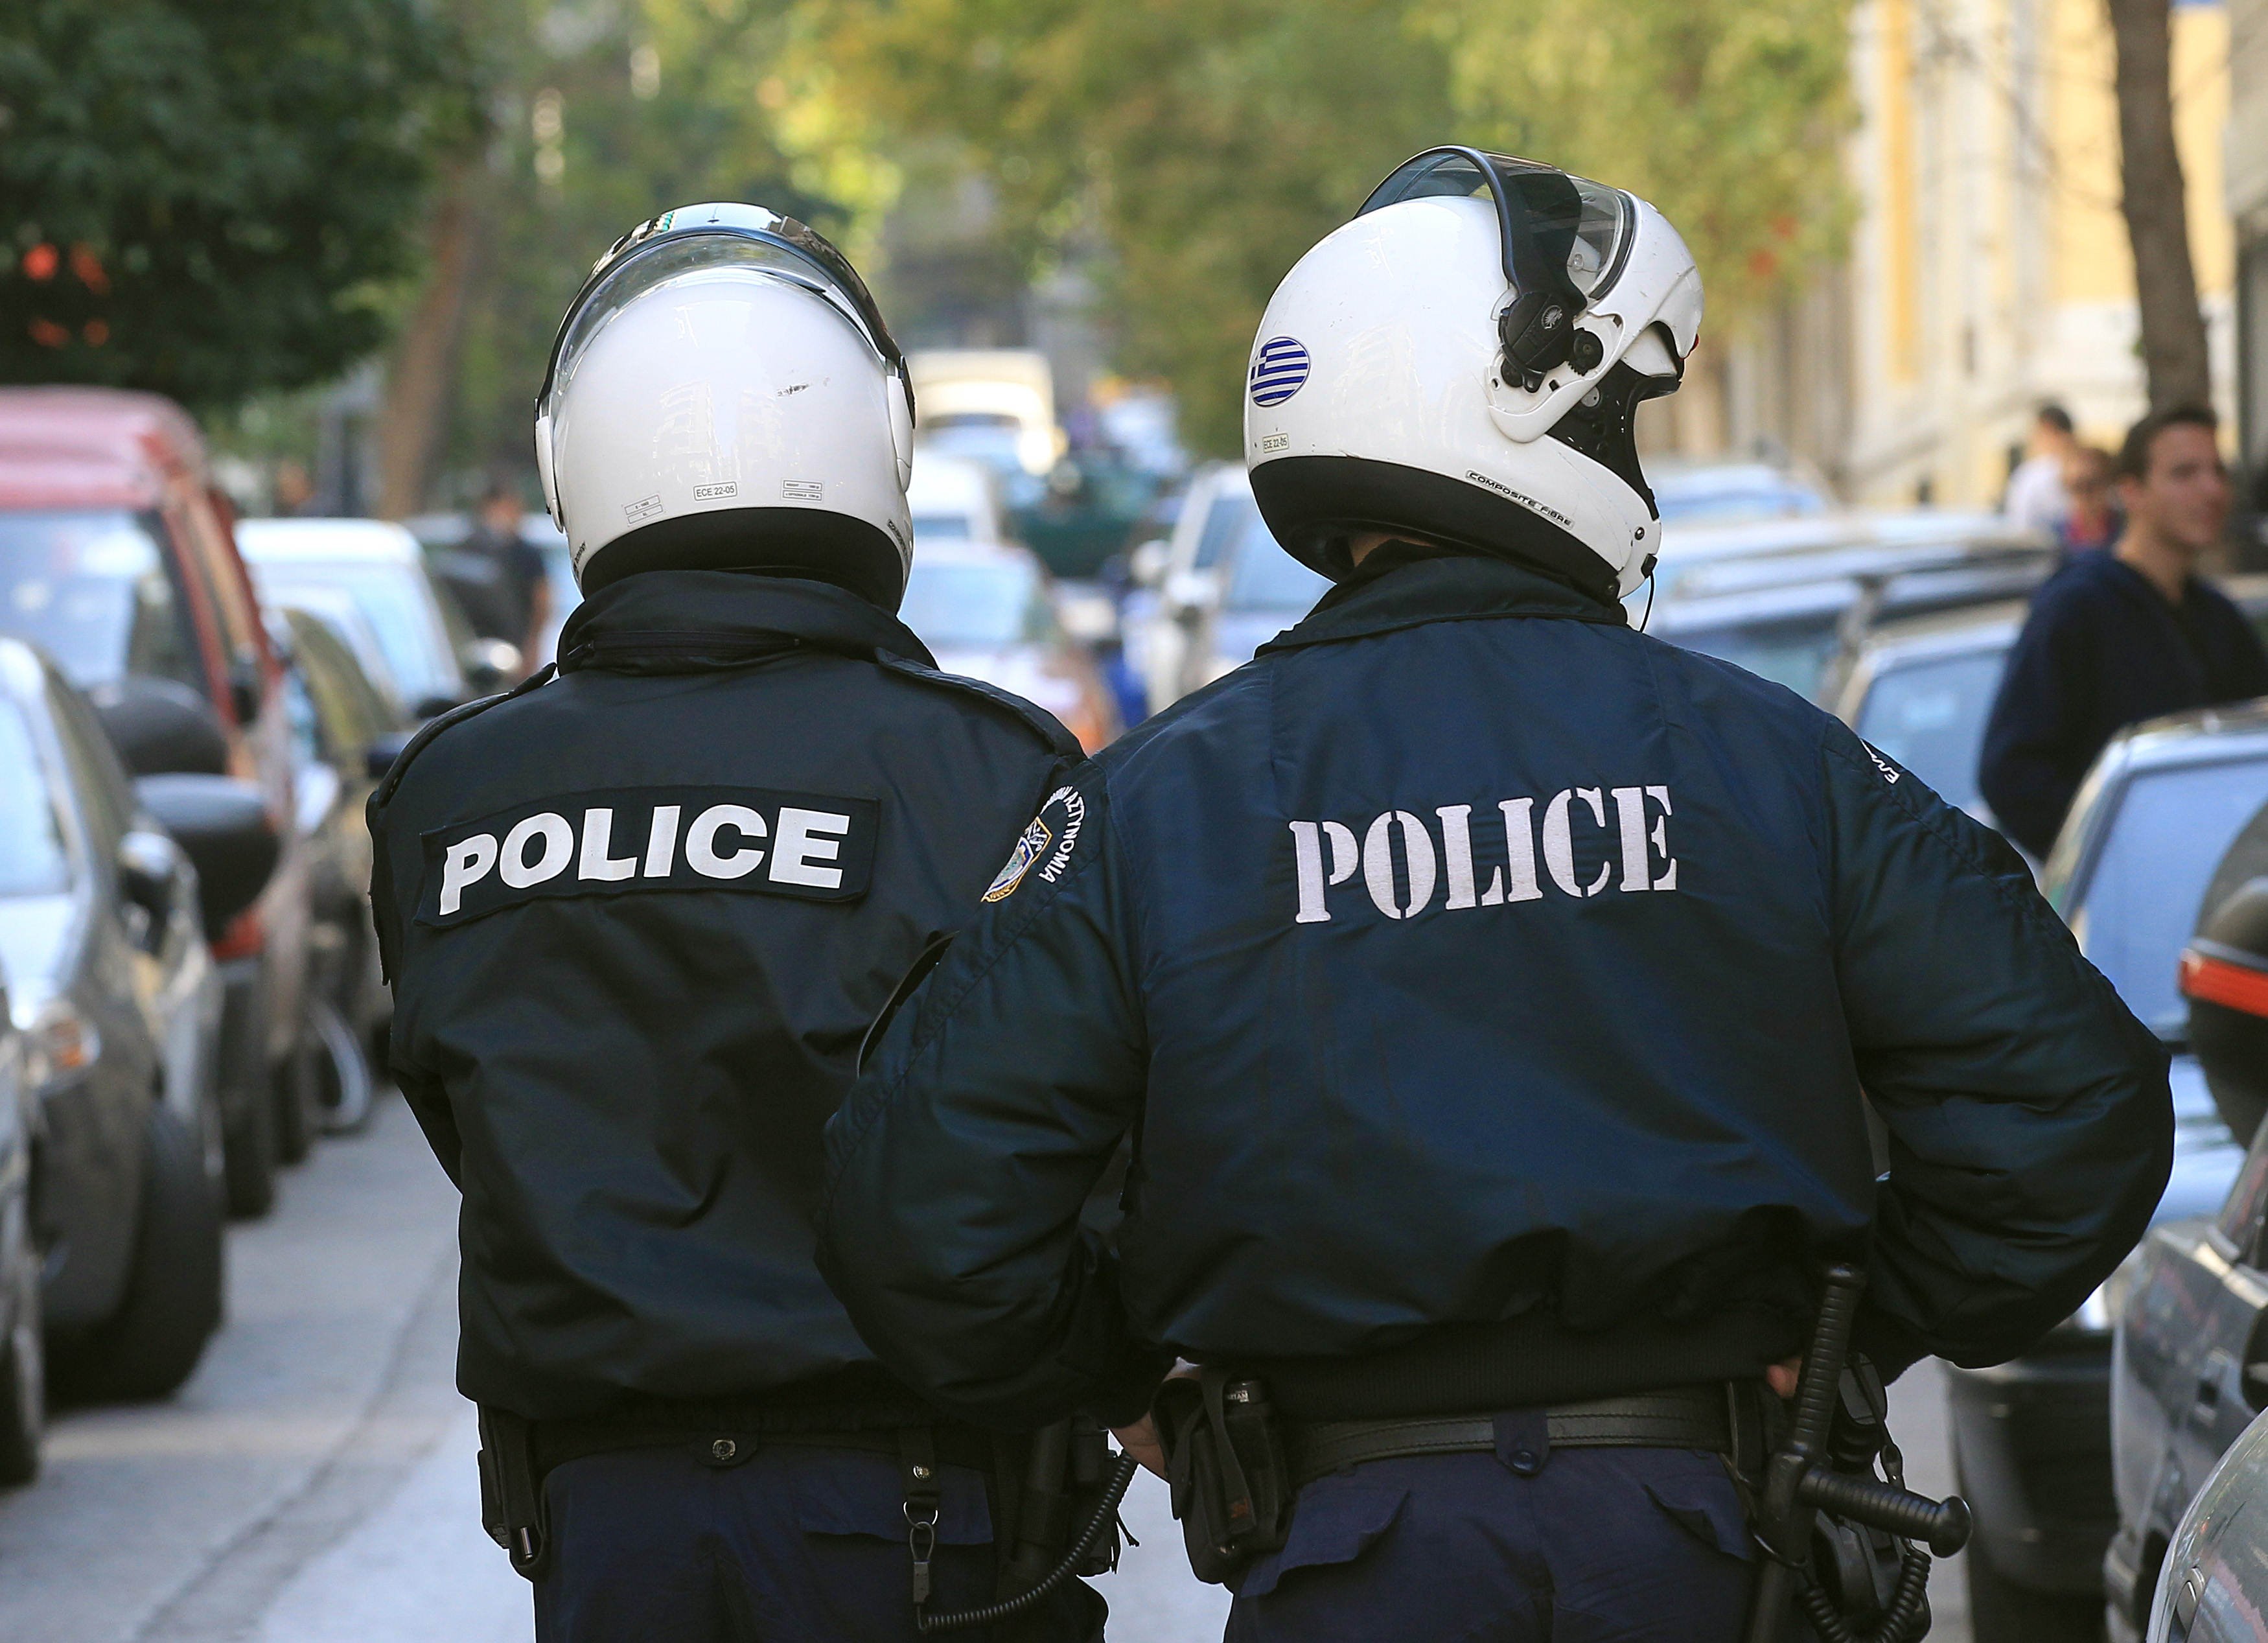 Απίστευτο! Αστυνομικός εναντίον ατόμου με κινητικά προβλήματα: “Θα έπρεπε να ντρέπεσαι να κυκλοφορείς!”